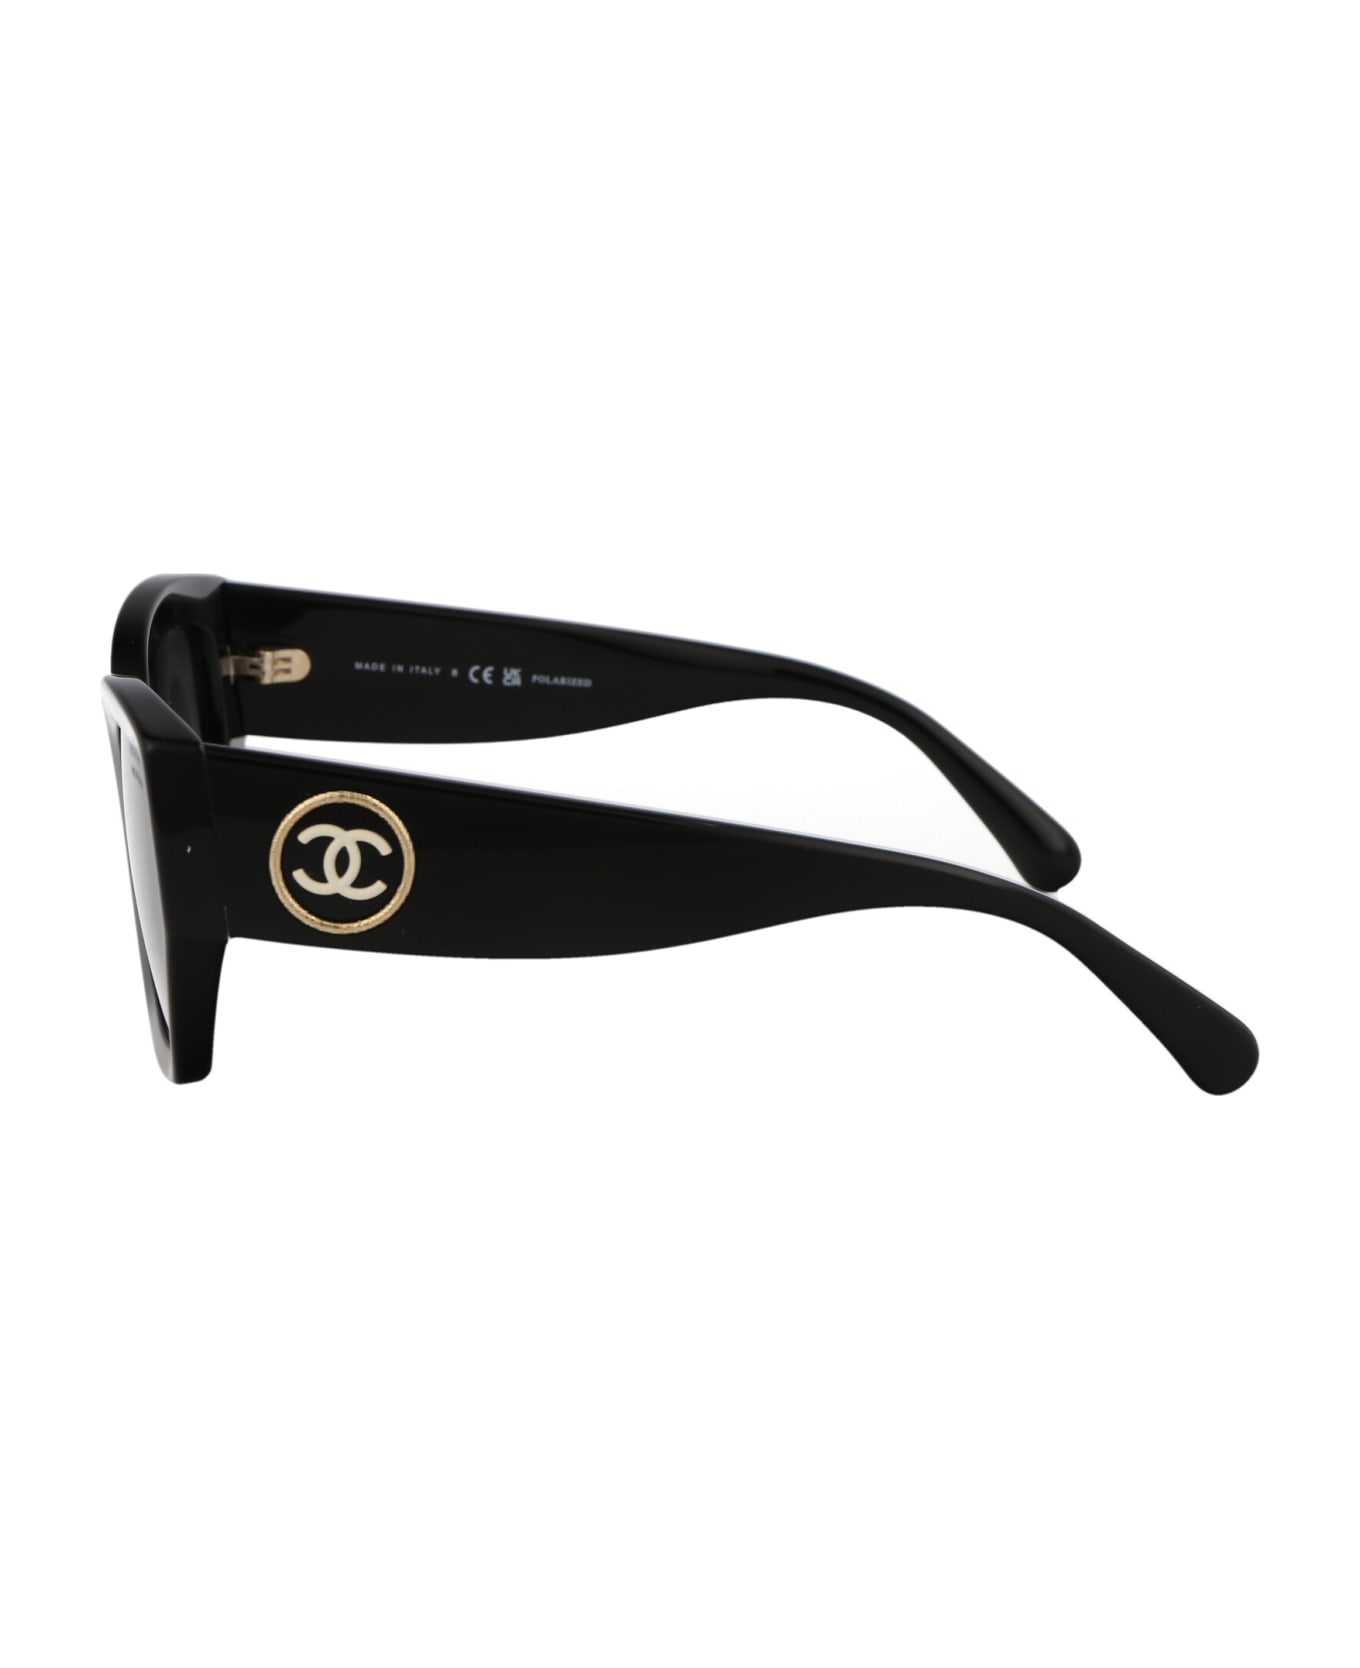 Chanel 0ch5506 Sunglasses - C622S8 BLACK